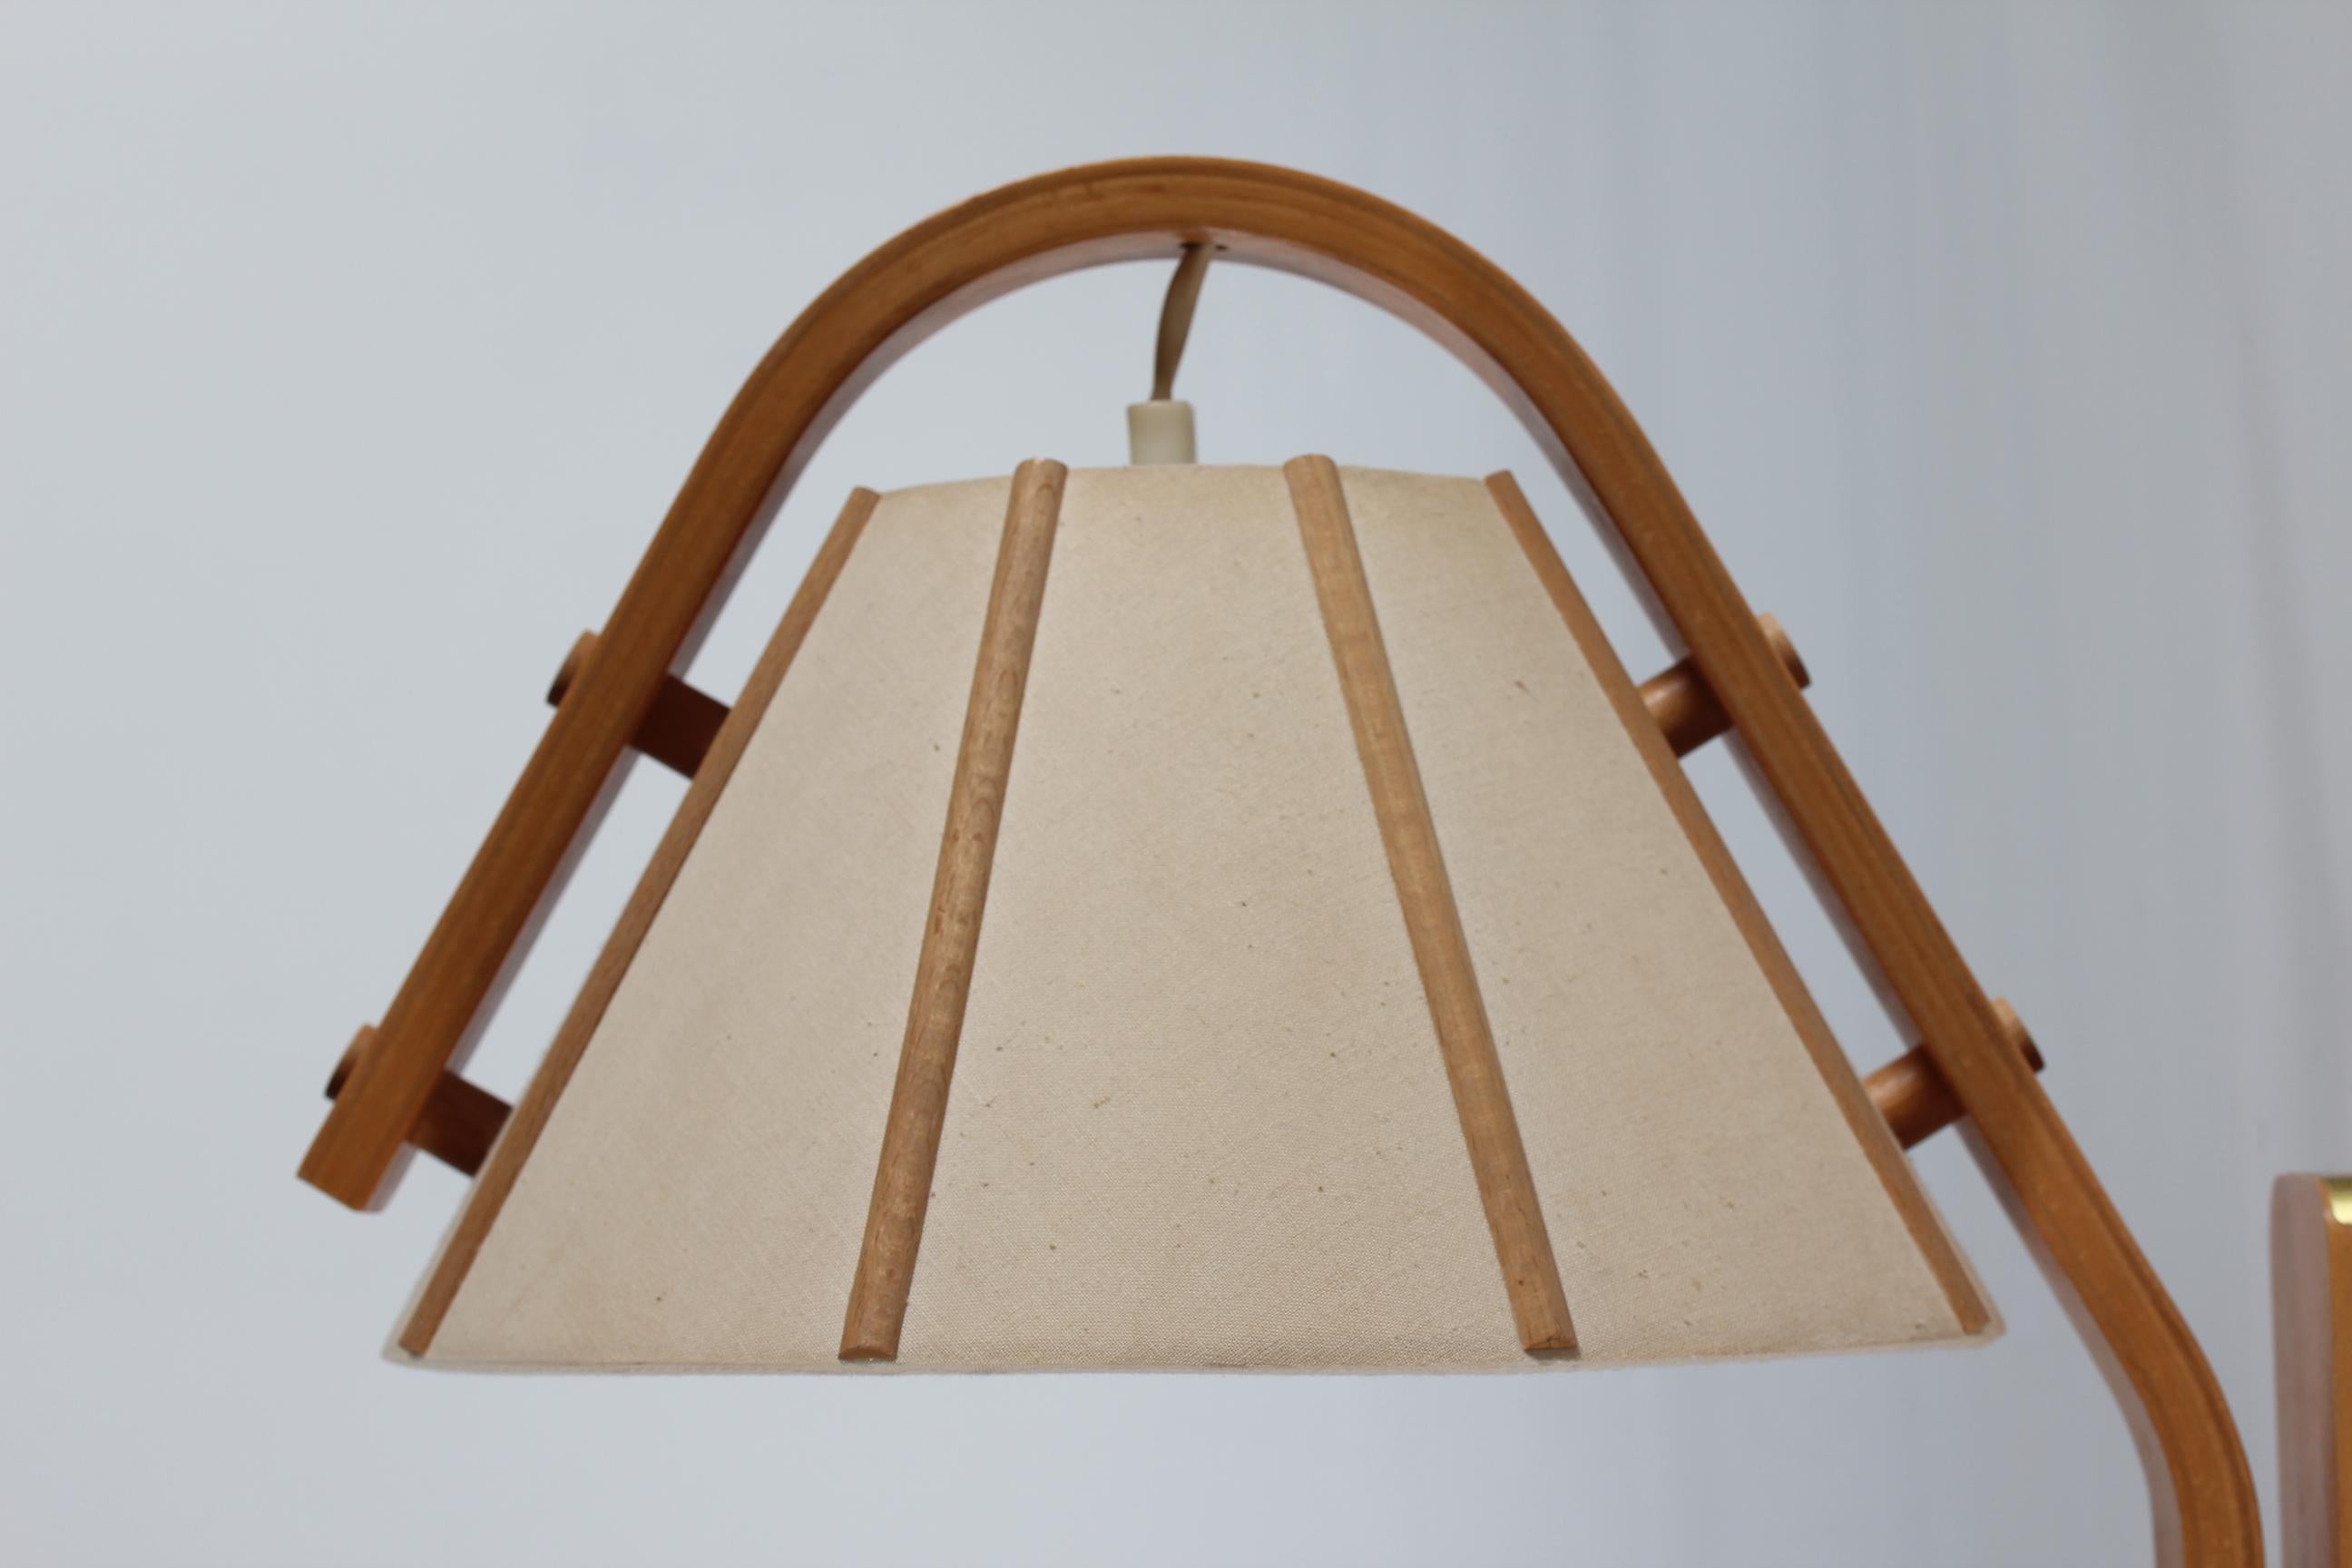 Applique vintage originale conçue par Jan Wickelgren pour le fabricant de lampes suédois Aneta dans les années 1970.

L'applique est en hêtre laqué et l'abat-jour est en tissu de lin de couleur naturelle qui diffuse une lumière chaude et